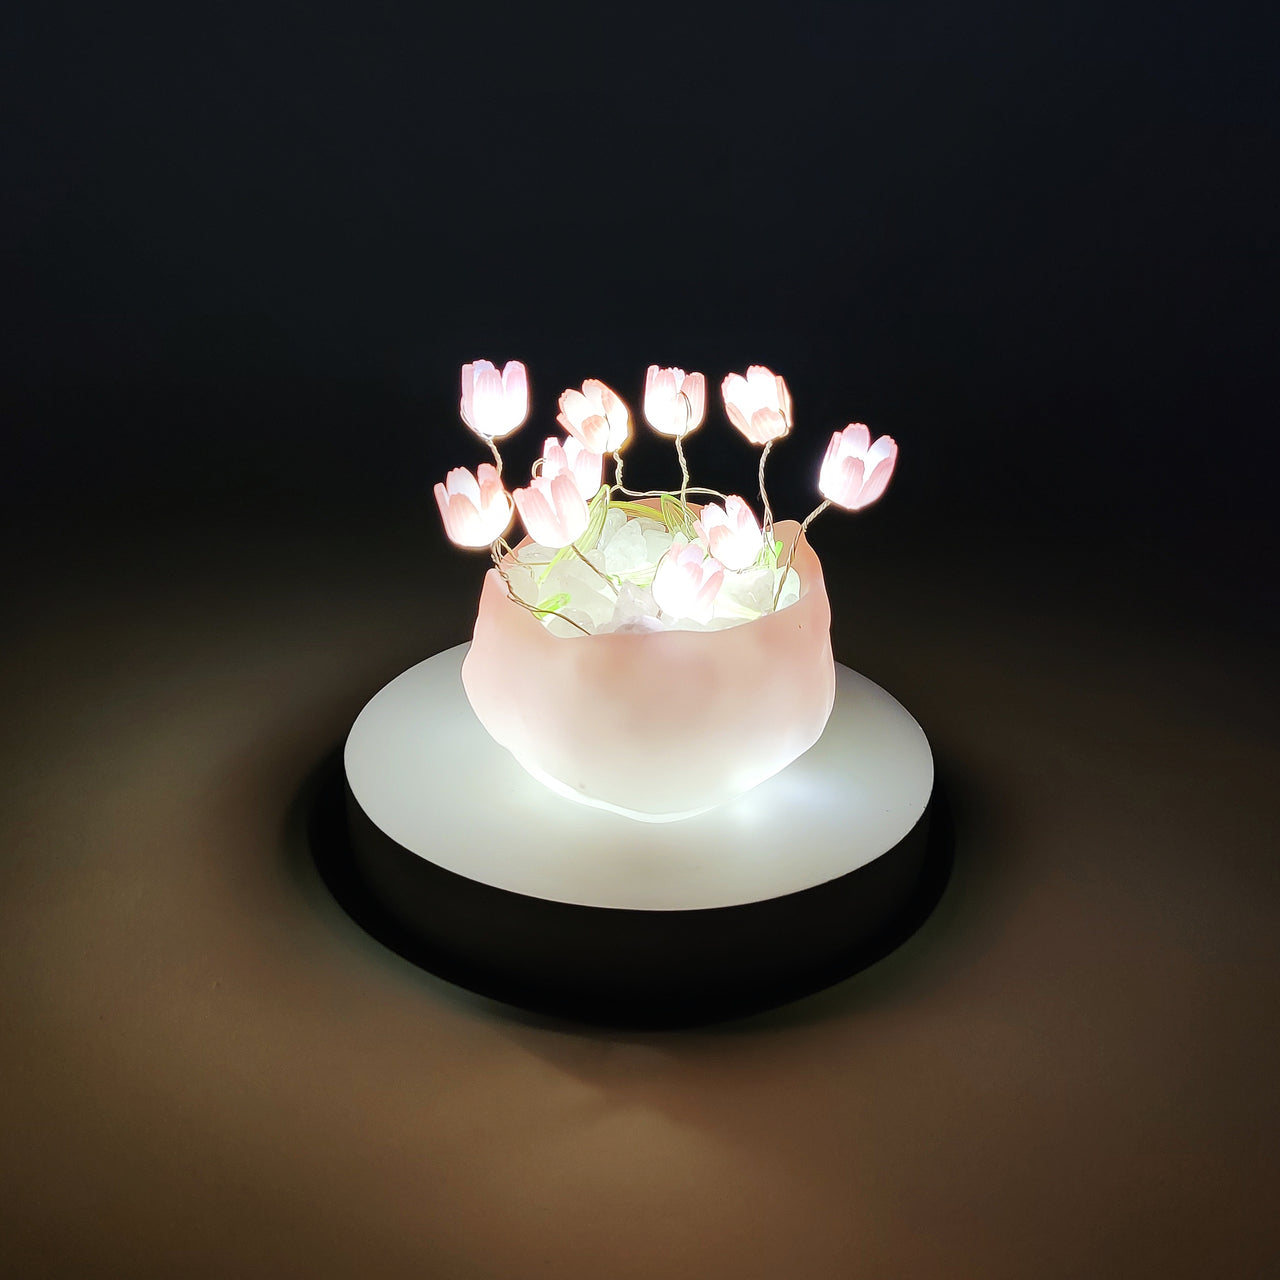 CreateKit Tulip LED Night Light, Unique Handmade Gift for Her